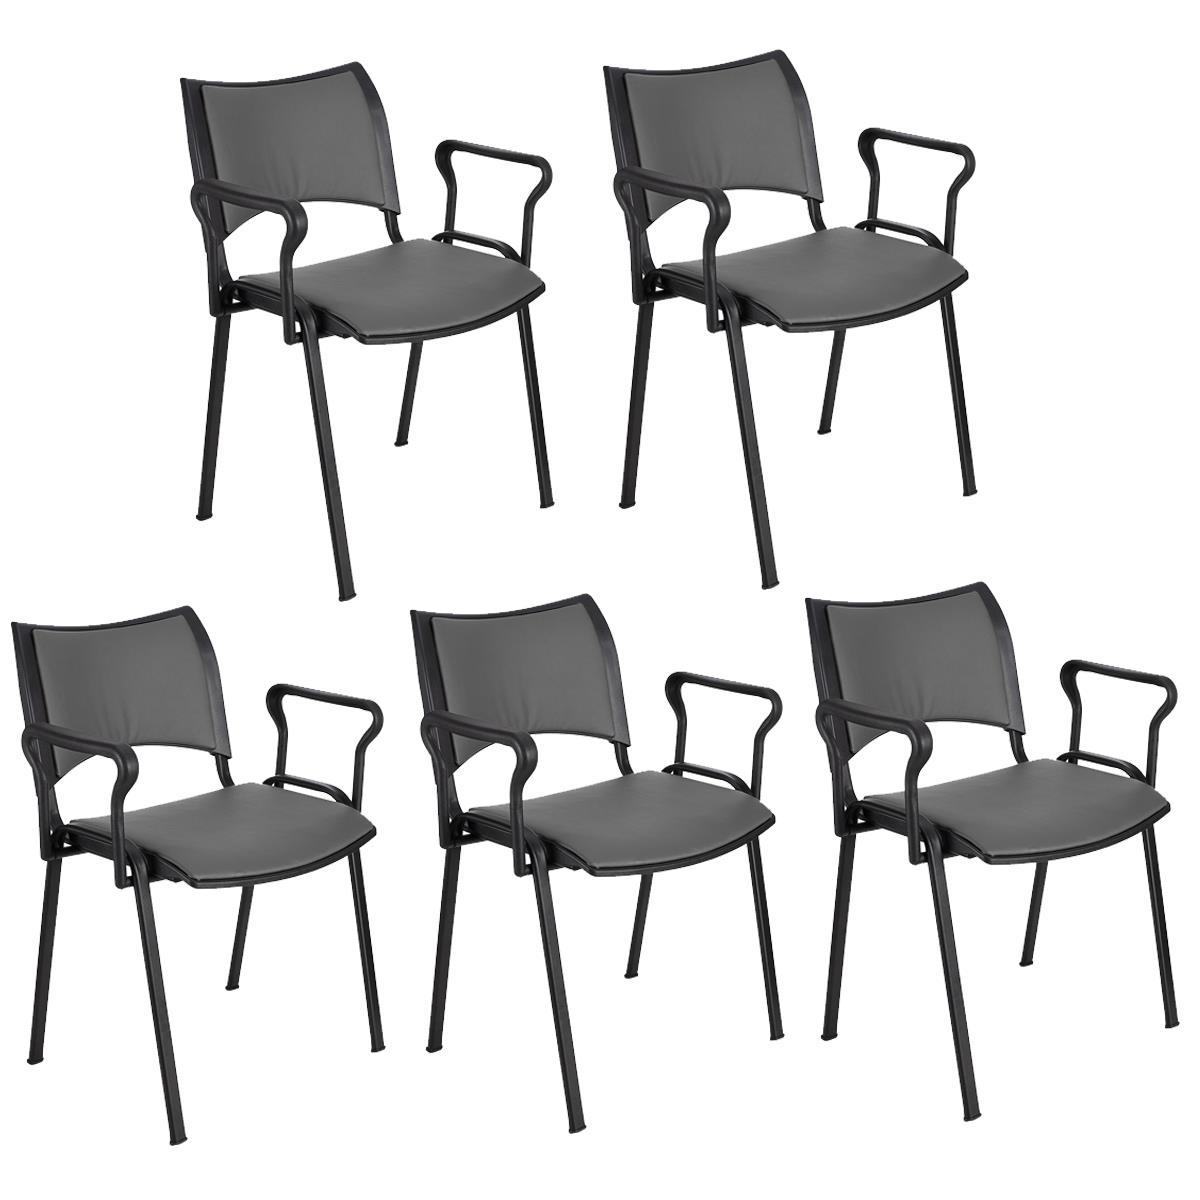 Lote 5 Cadeiras de Visita ROMEL PELE COM BRAÇOS, Empilhável, Pernas Pretas, Cinzento